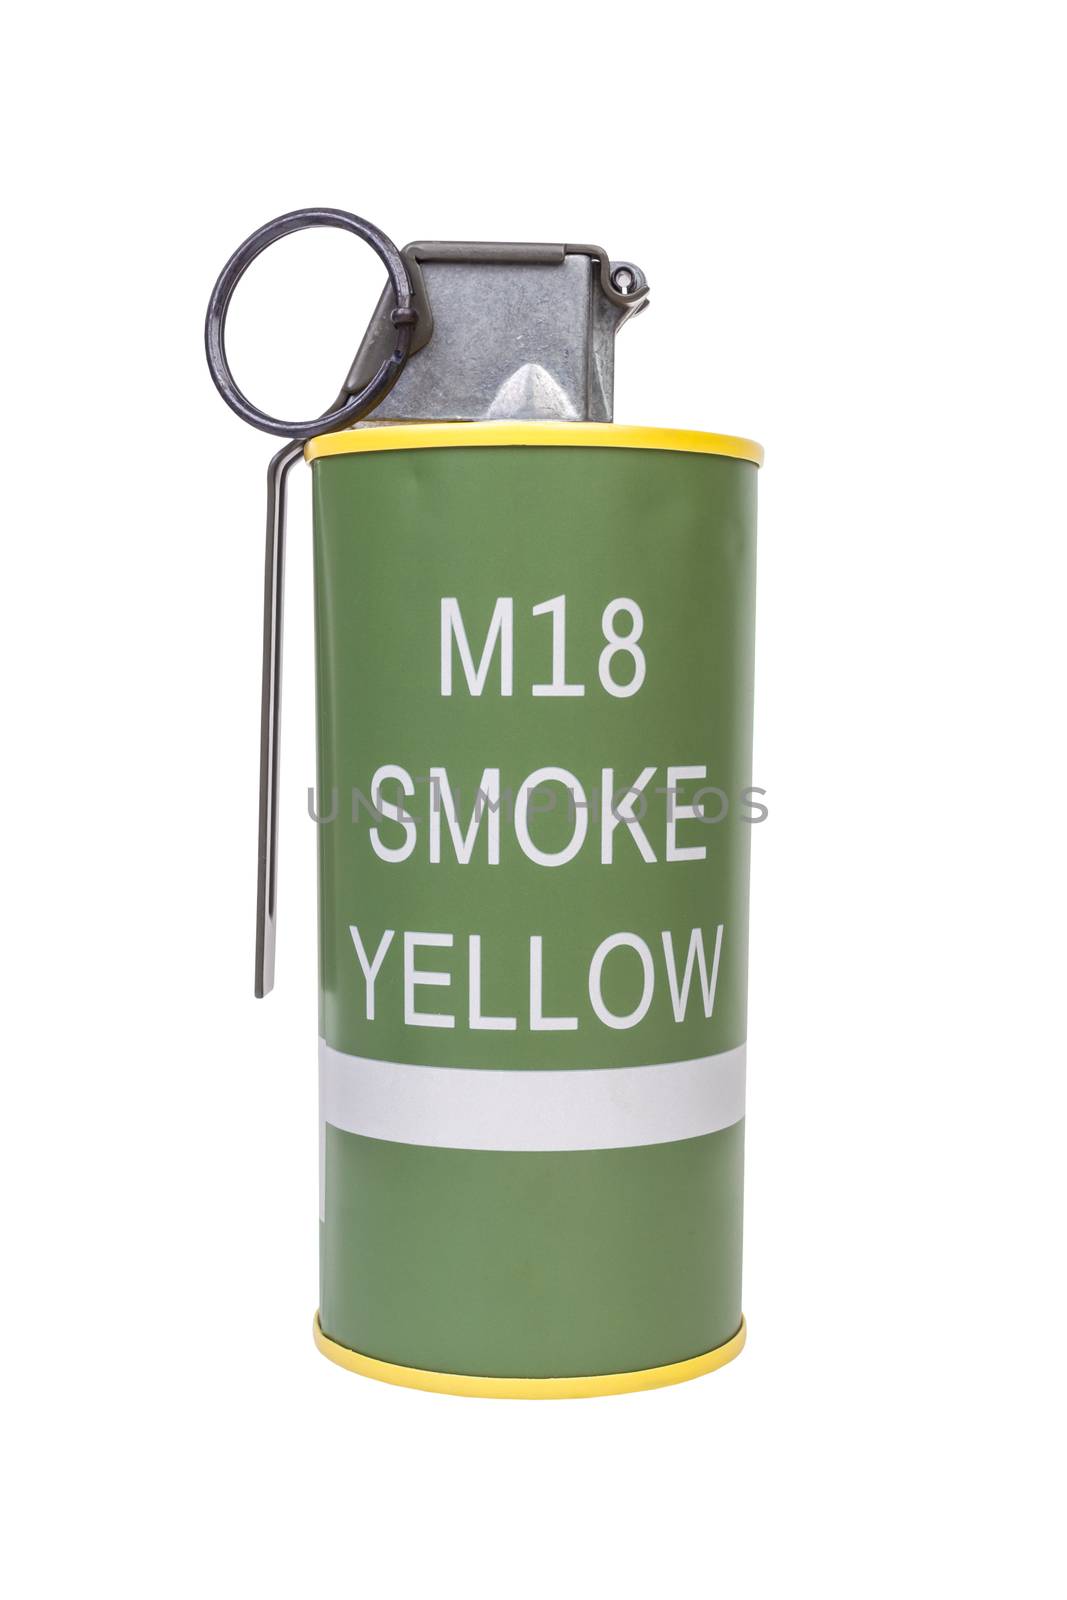 M18 Smoke Yellow explosive model, weapon army,standard timed fuz by FrameAngel